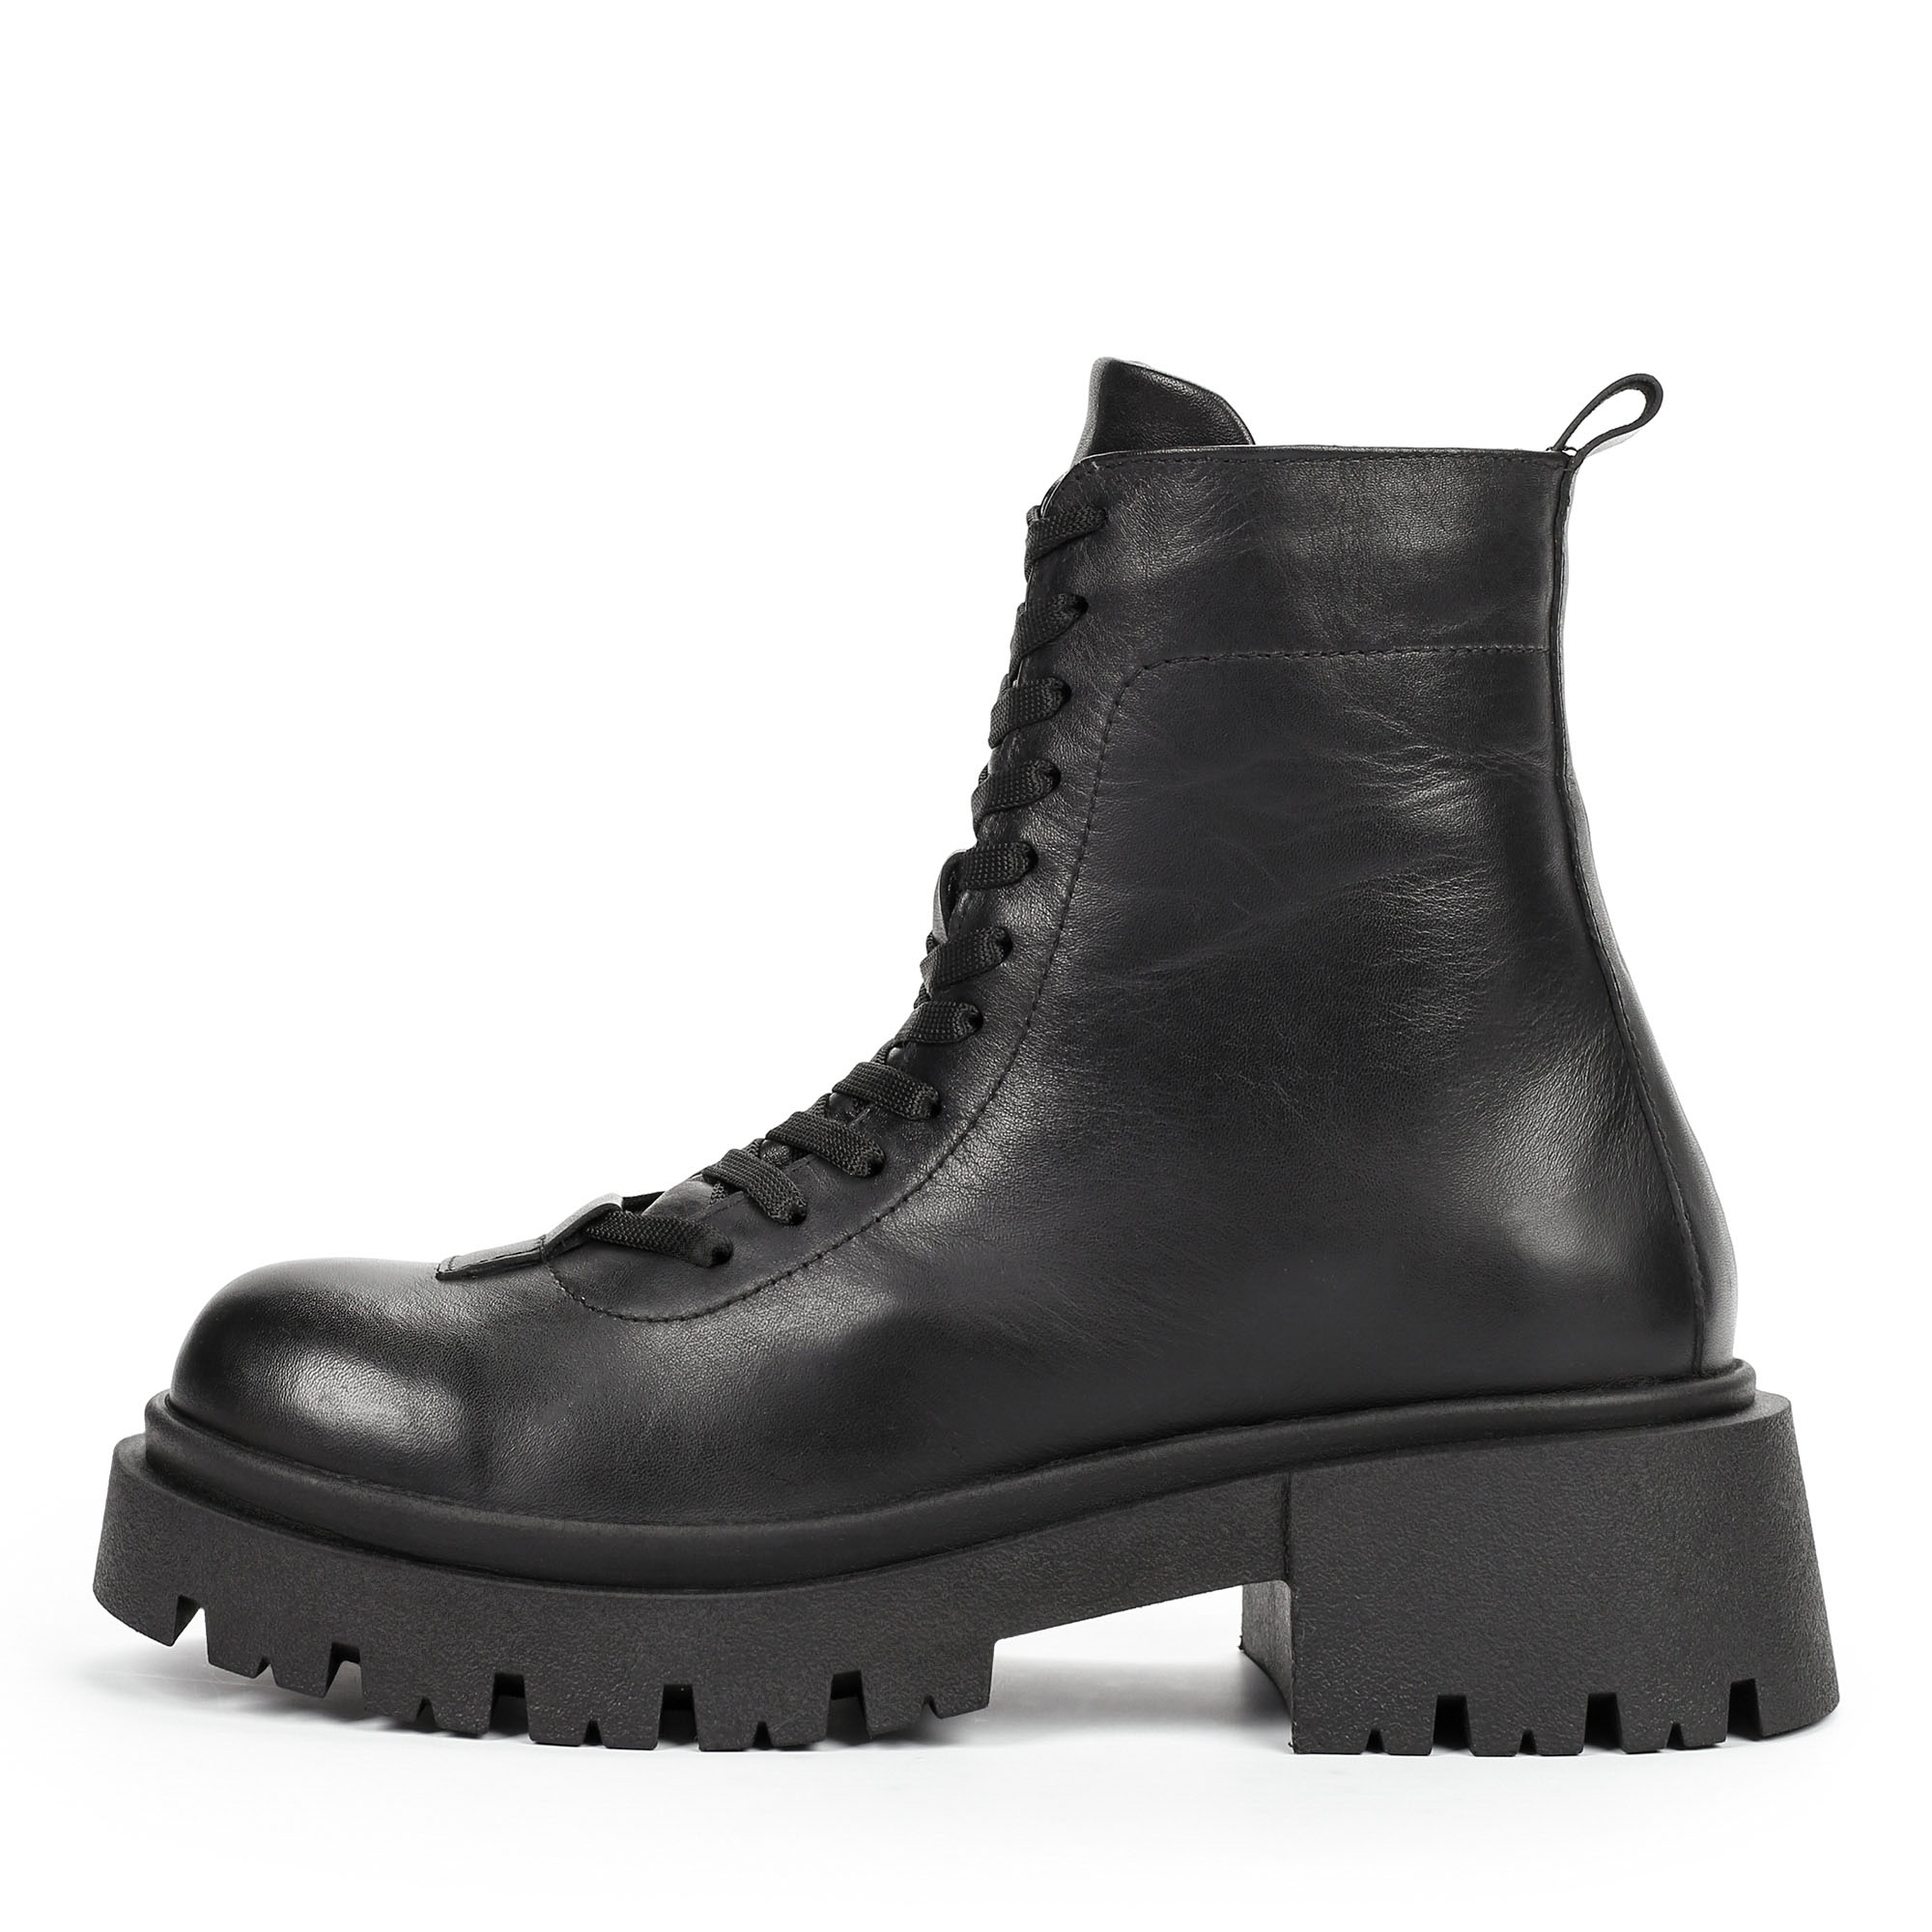 Ботинки Thomas Munz 506-180A-2102, цвет черный, размер 40